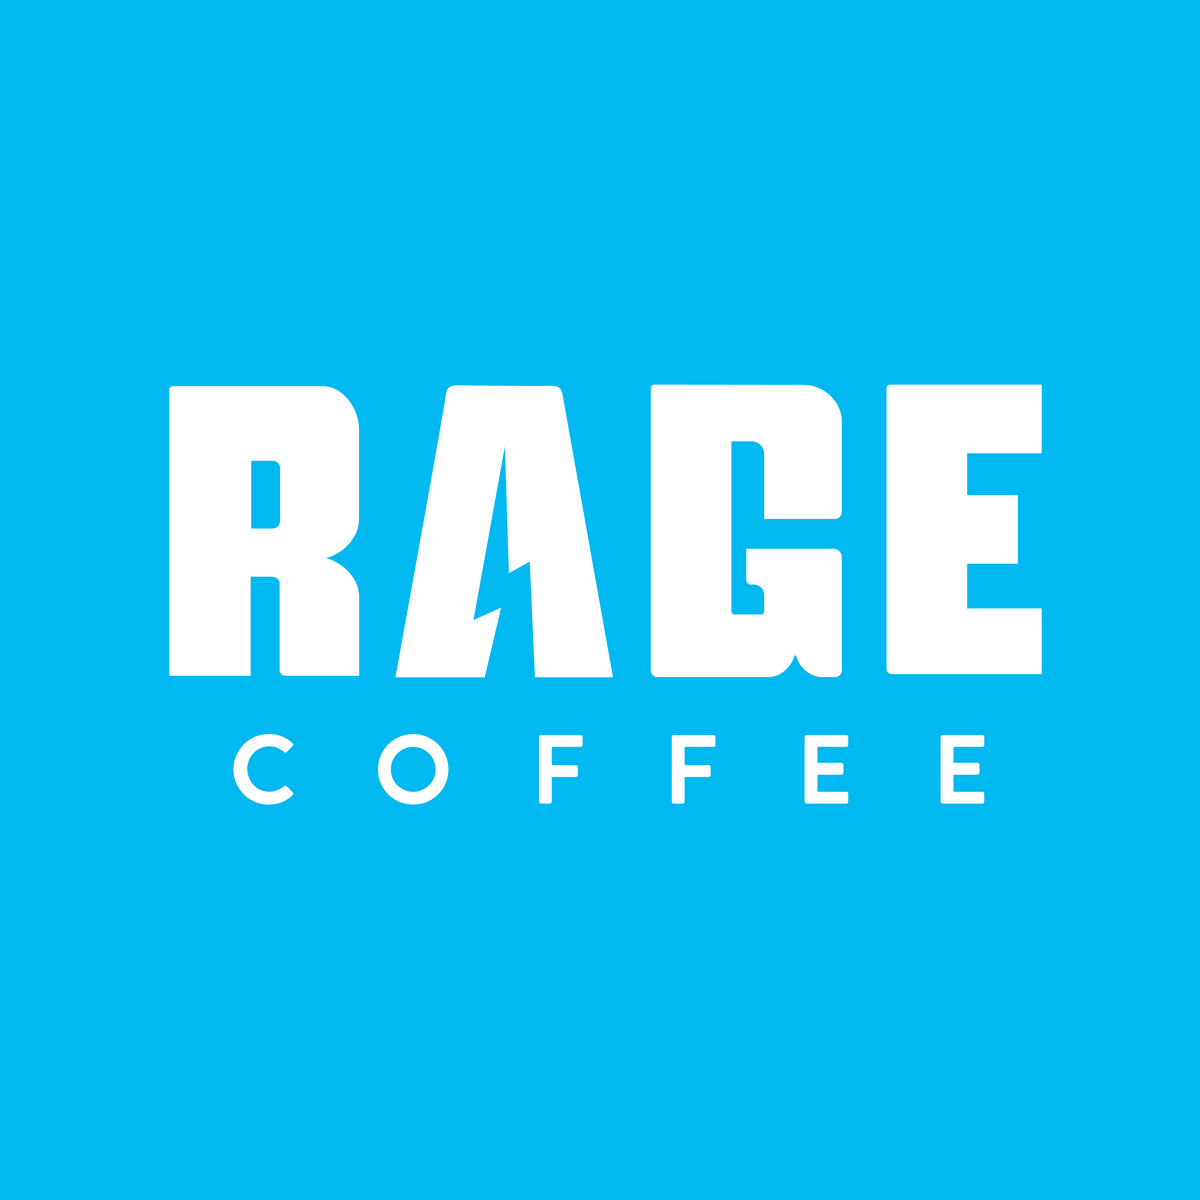 ragecoffee.com